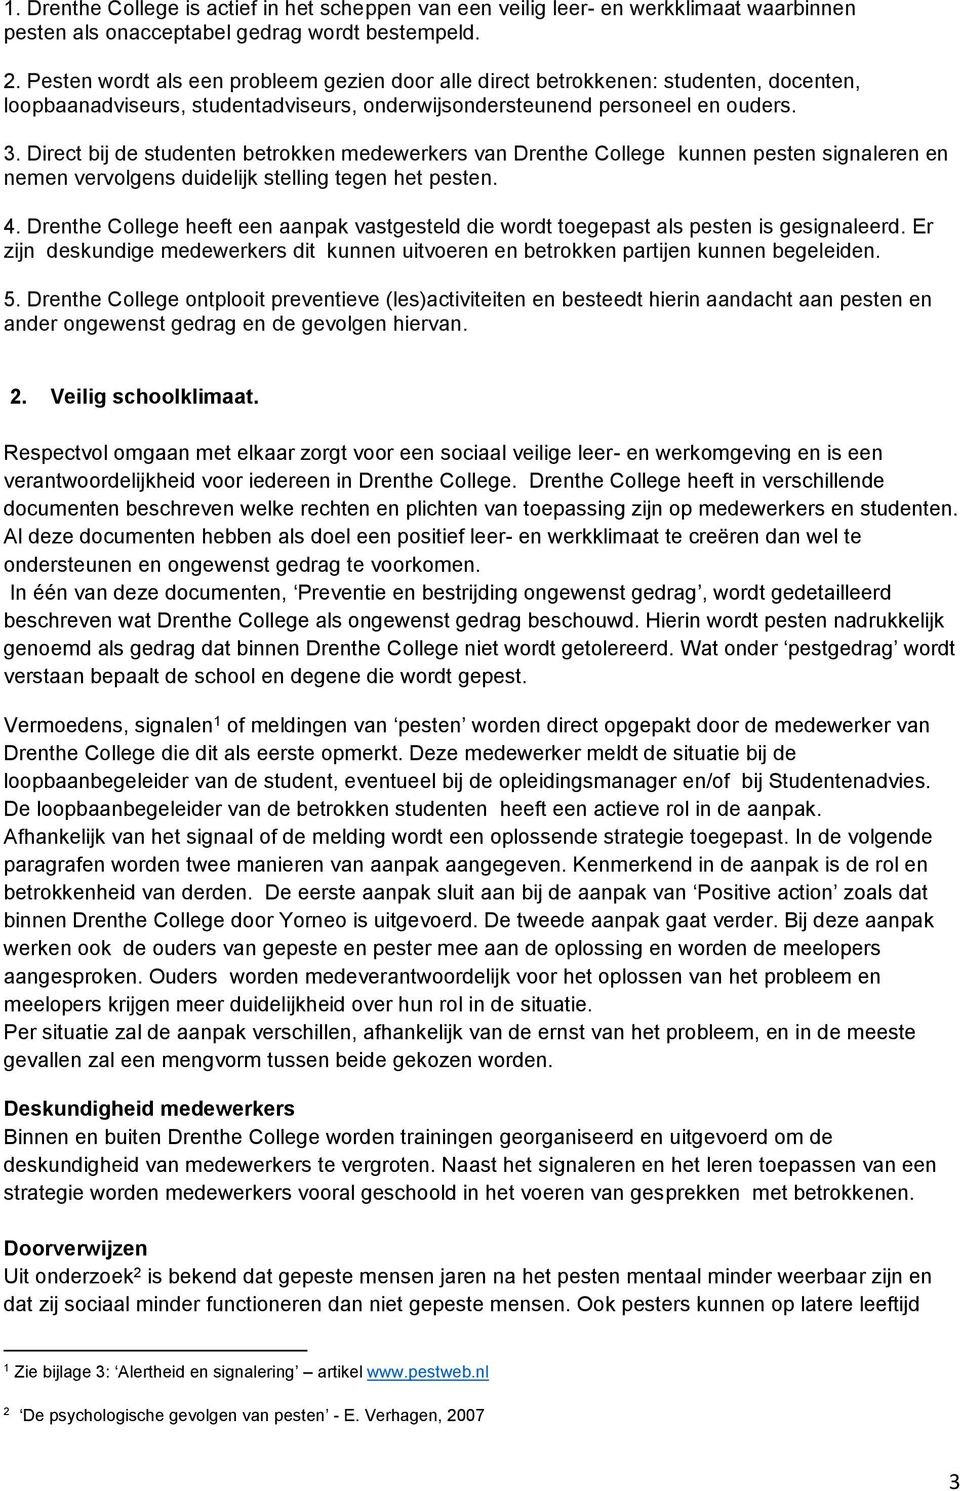 Direct bij de studenten betrokken medewerkers van Drenthe College kunnen pesten signaleren en nemen vervolgens duidelijk stelling tegen het pesten. 4.